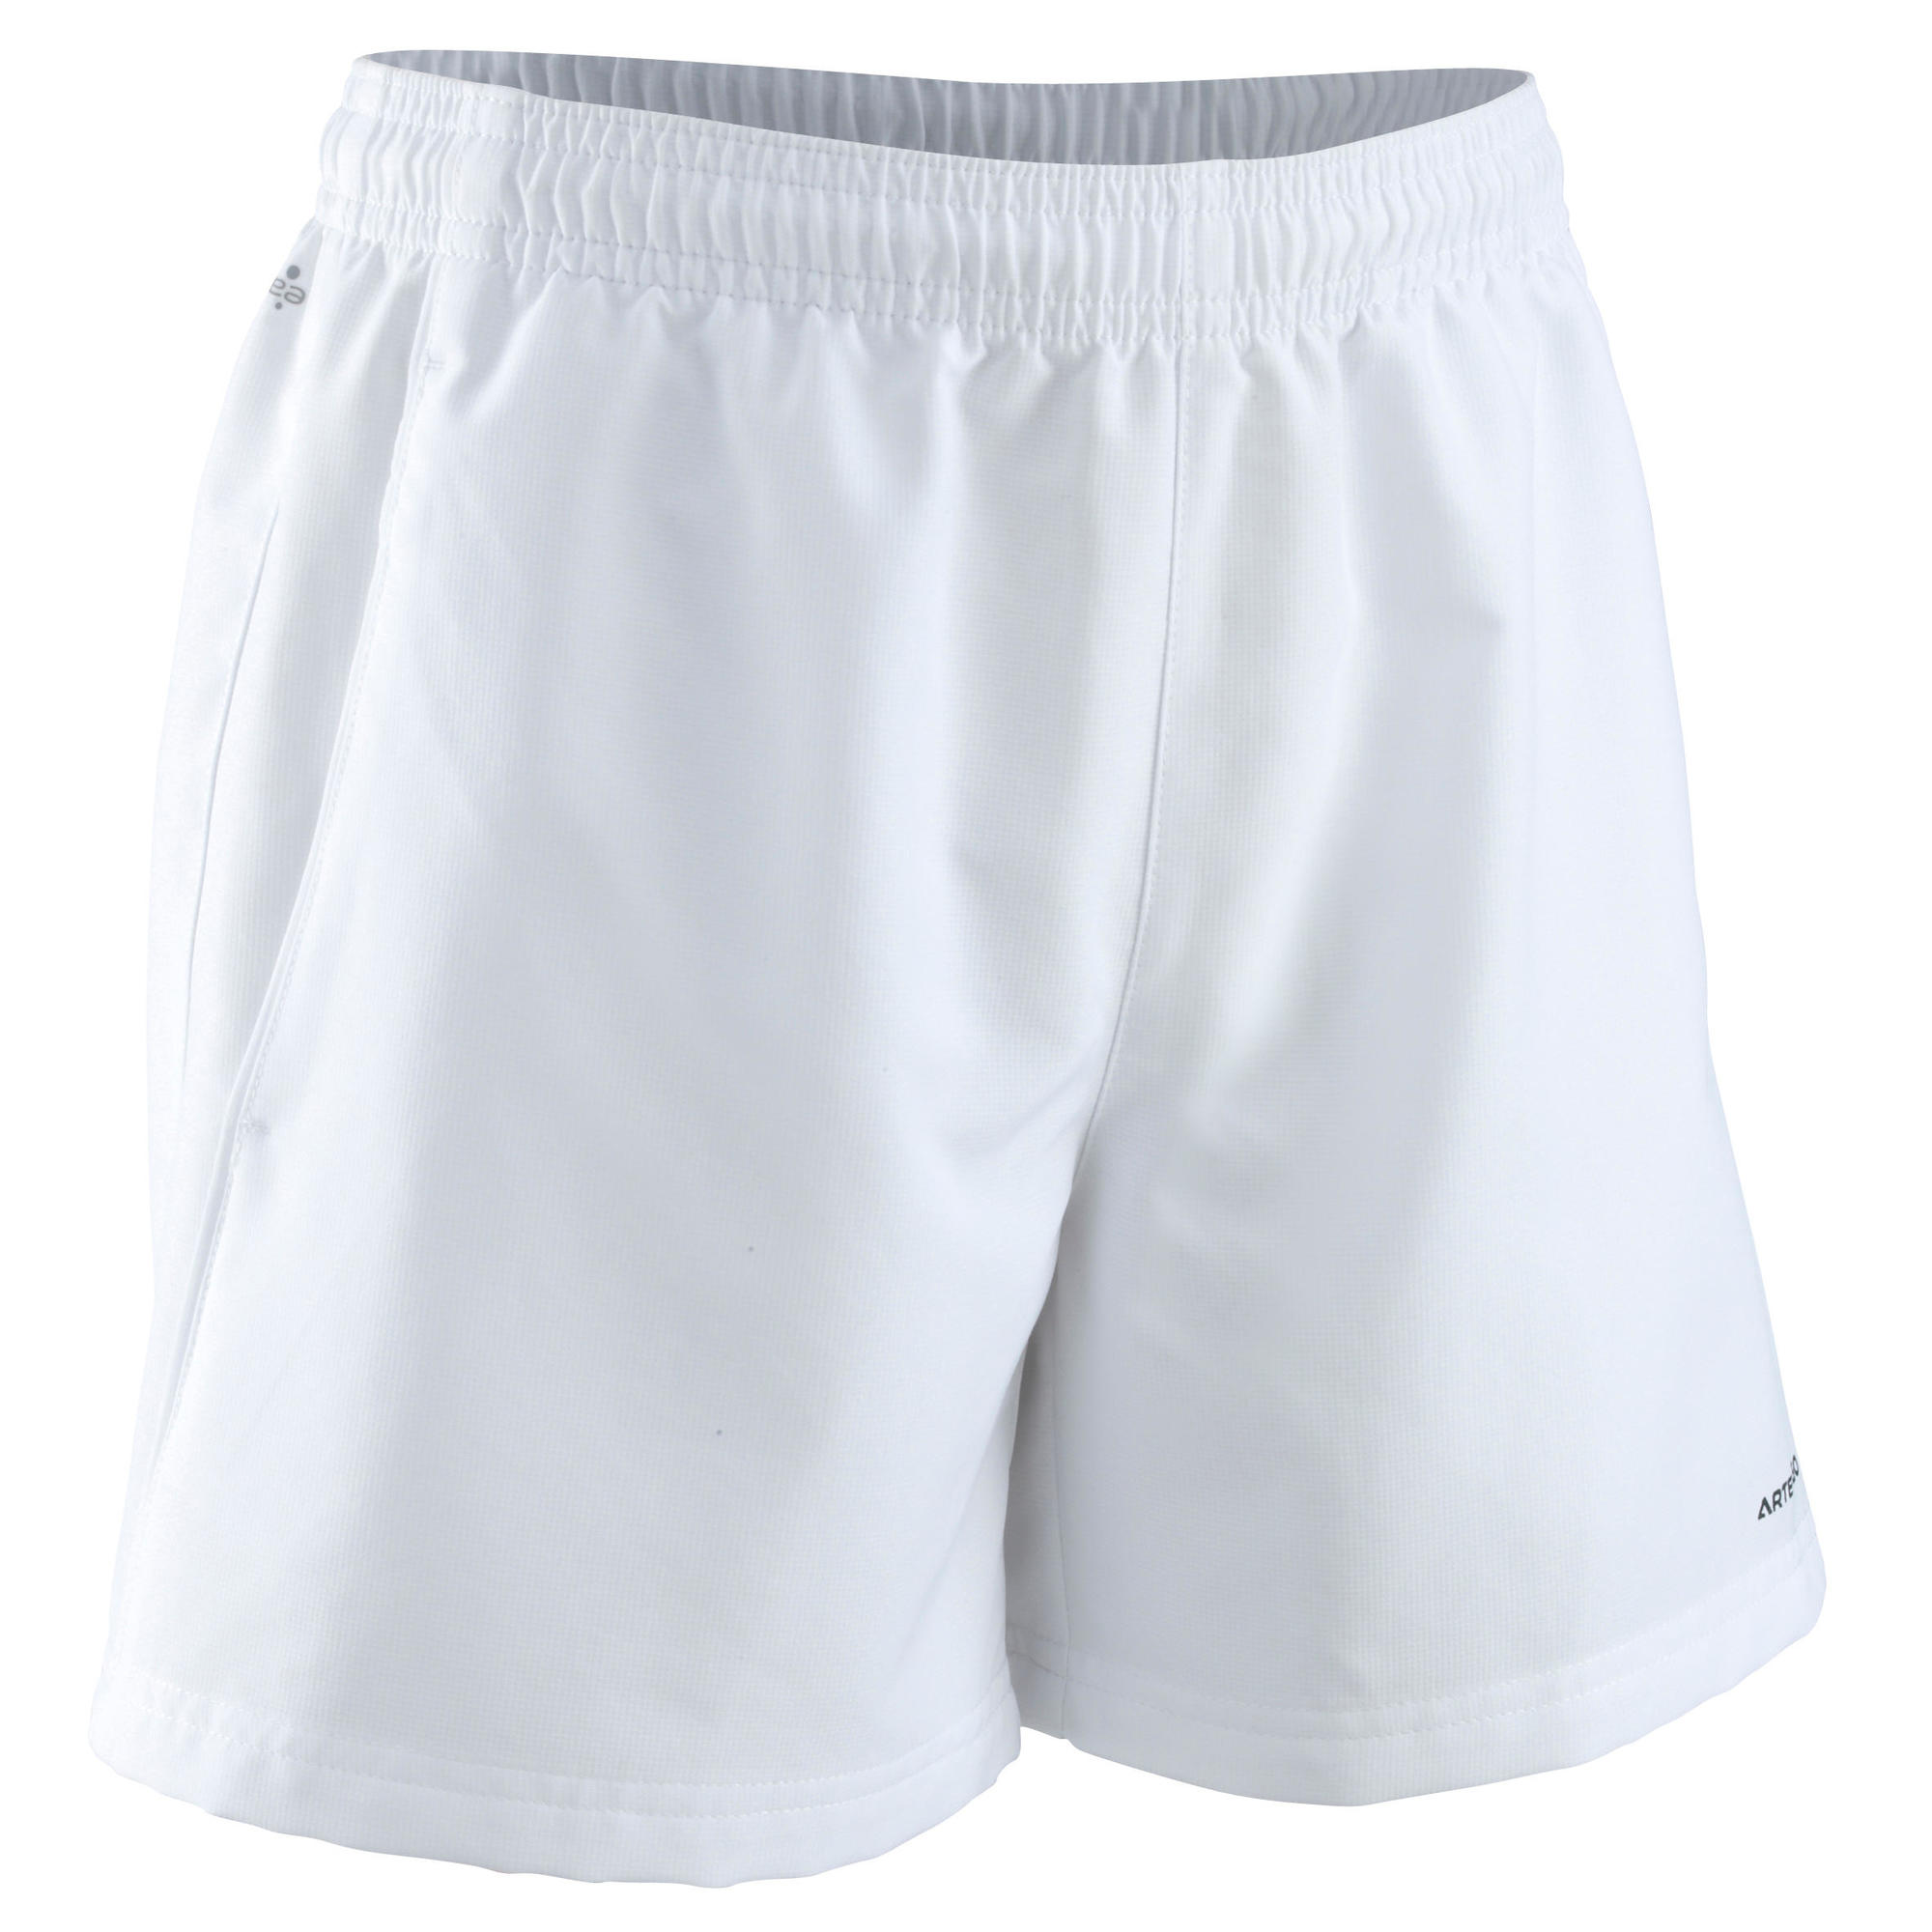 artengo shorts